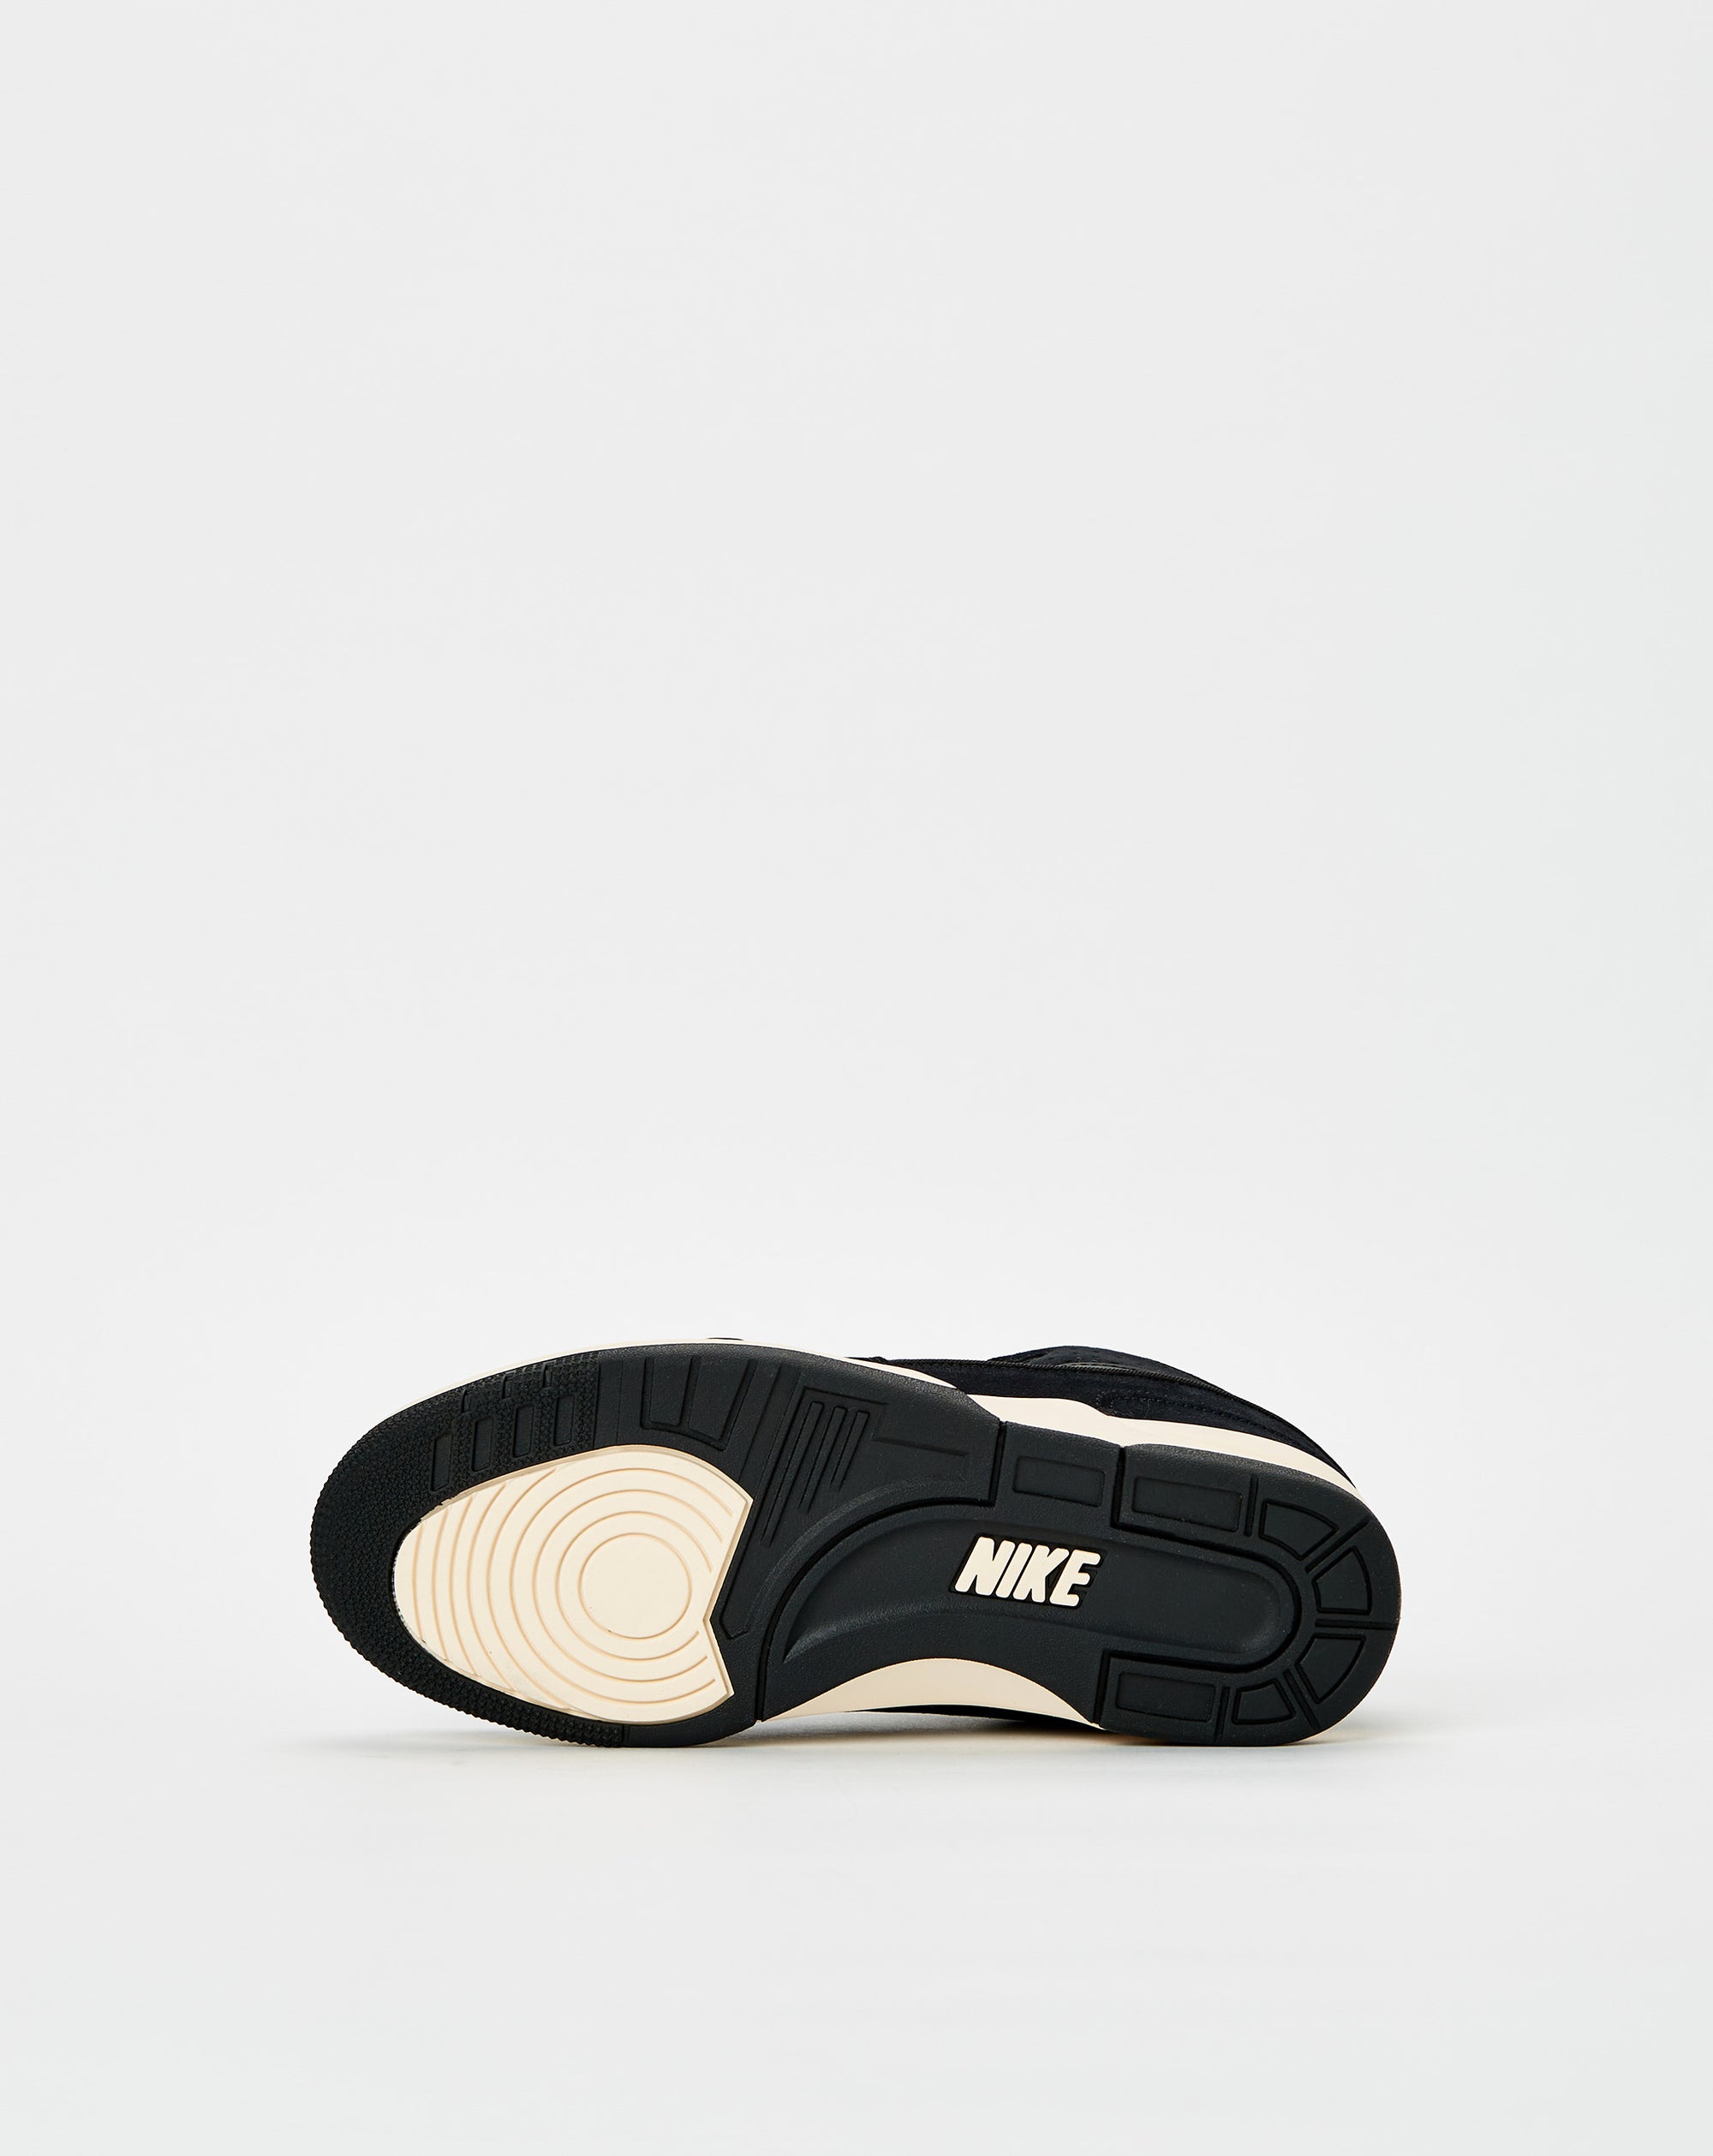 Nike AAF88 - Rule of Next Footwear